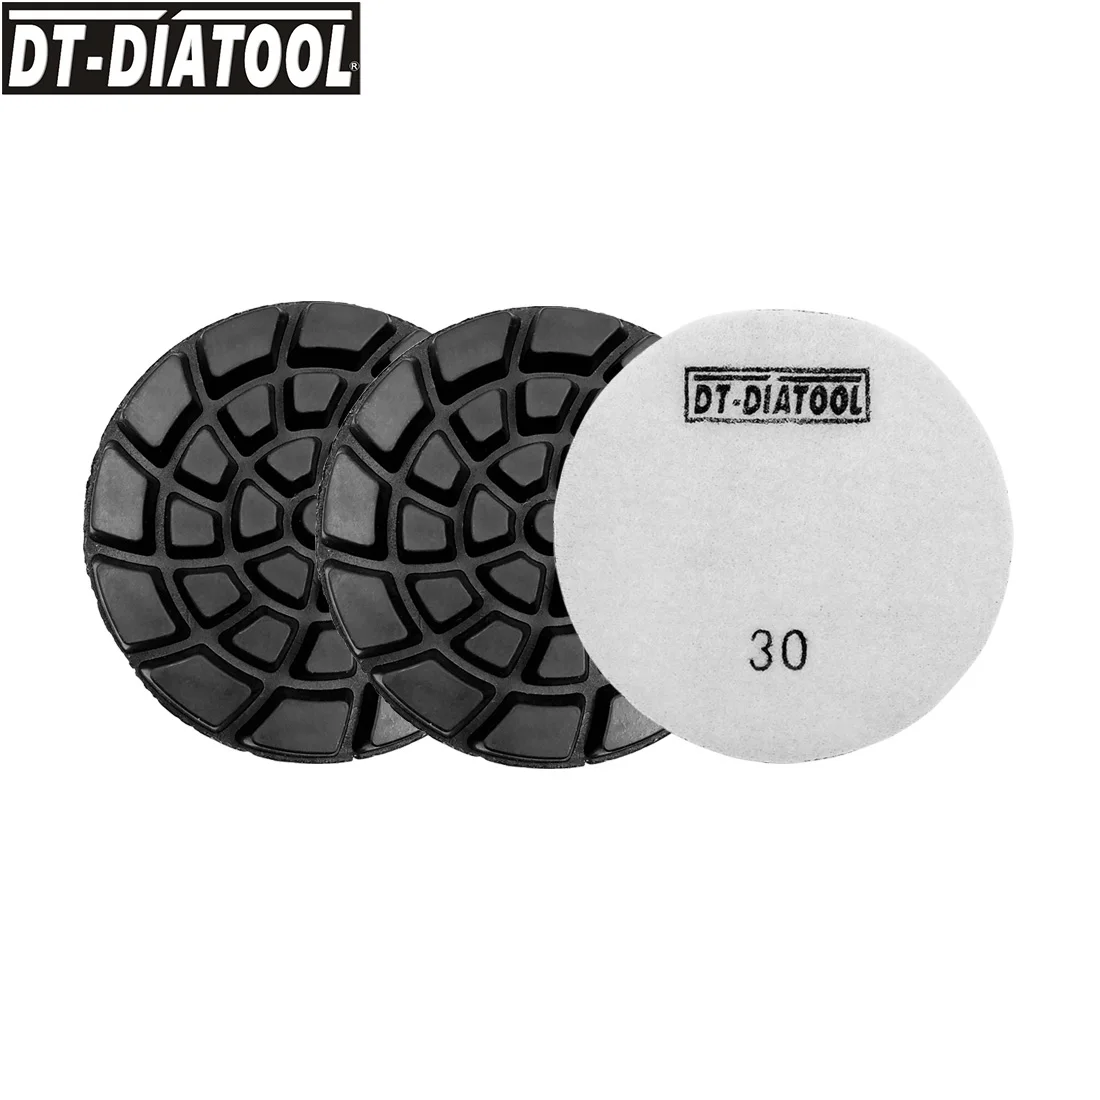 newly resin 3pcs lot tall DT-DIATOOL 3pcs/pk Grits #30 Resin Bond Diamond Concrete Polishing Pads Nylon Backed Floor Renew Sanding Discs Dia 100mm/4